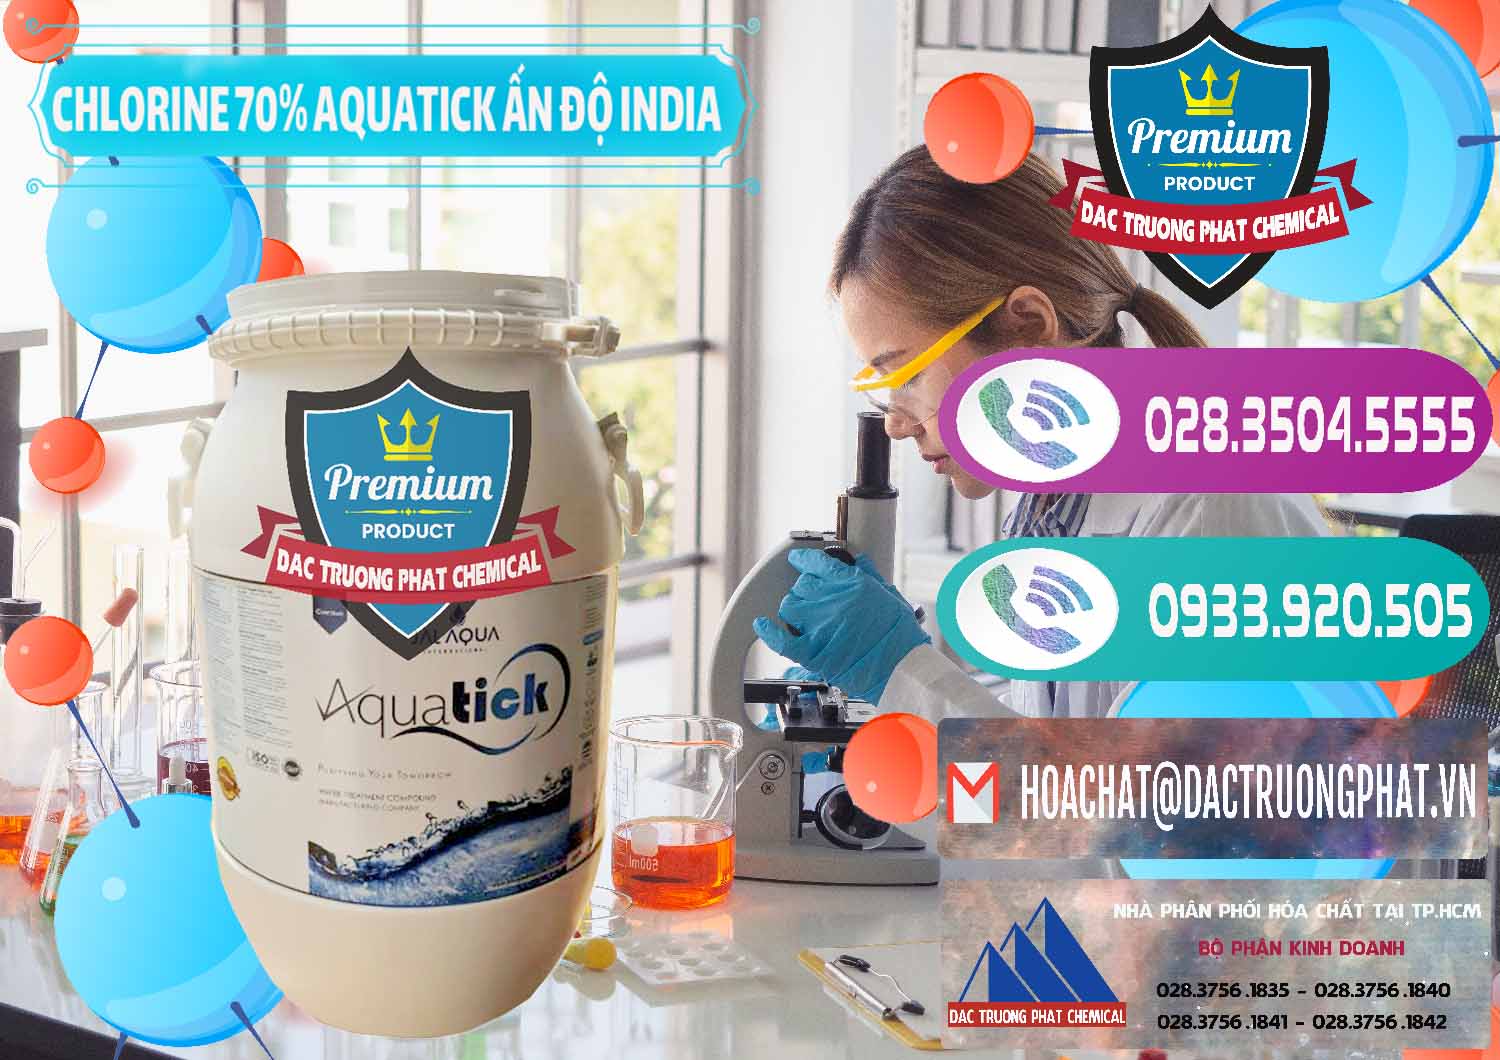 Chuyên bán ( cung cấp ) Chlorine – Clorin 70% Aquatick Jal Aqua Ấn Độ India - 0215 - Công ty chuyên bán ( phân phối ) hóa chất tại TP.HCM - hoachatxulynuoc.com